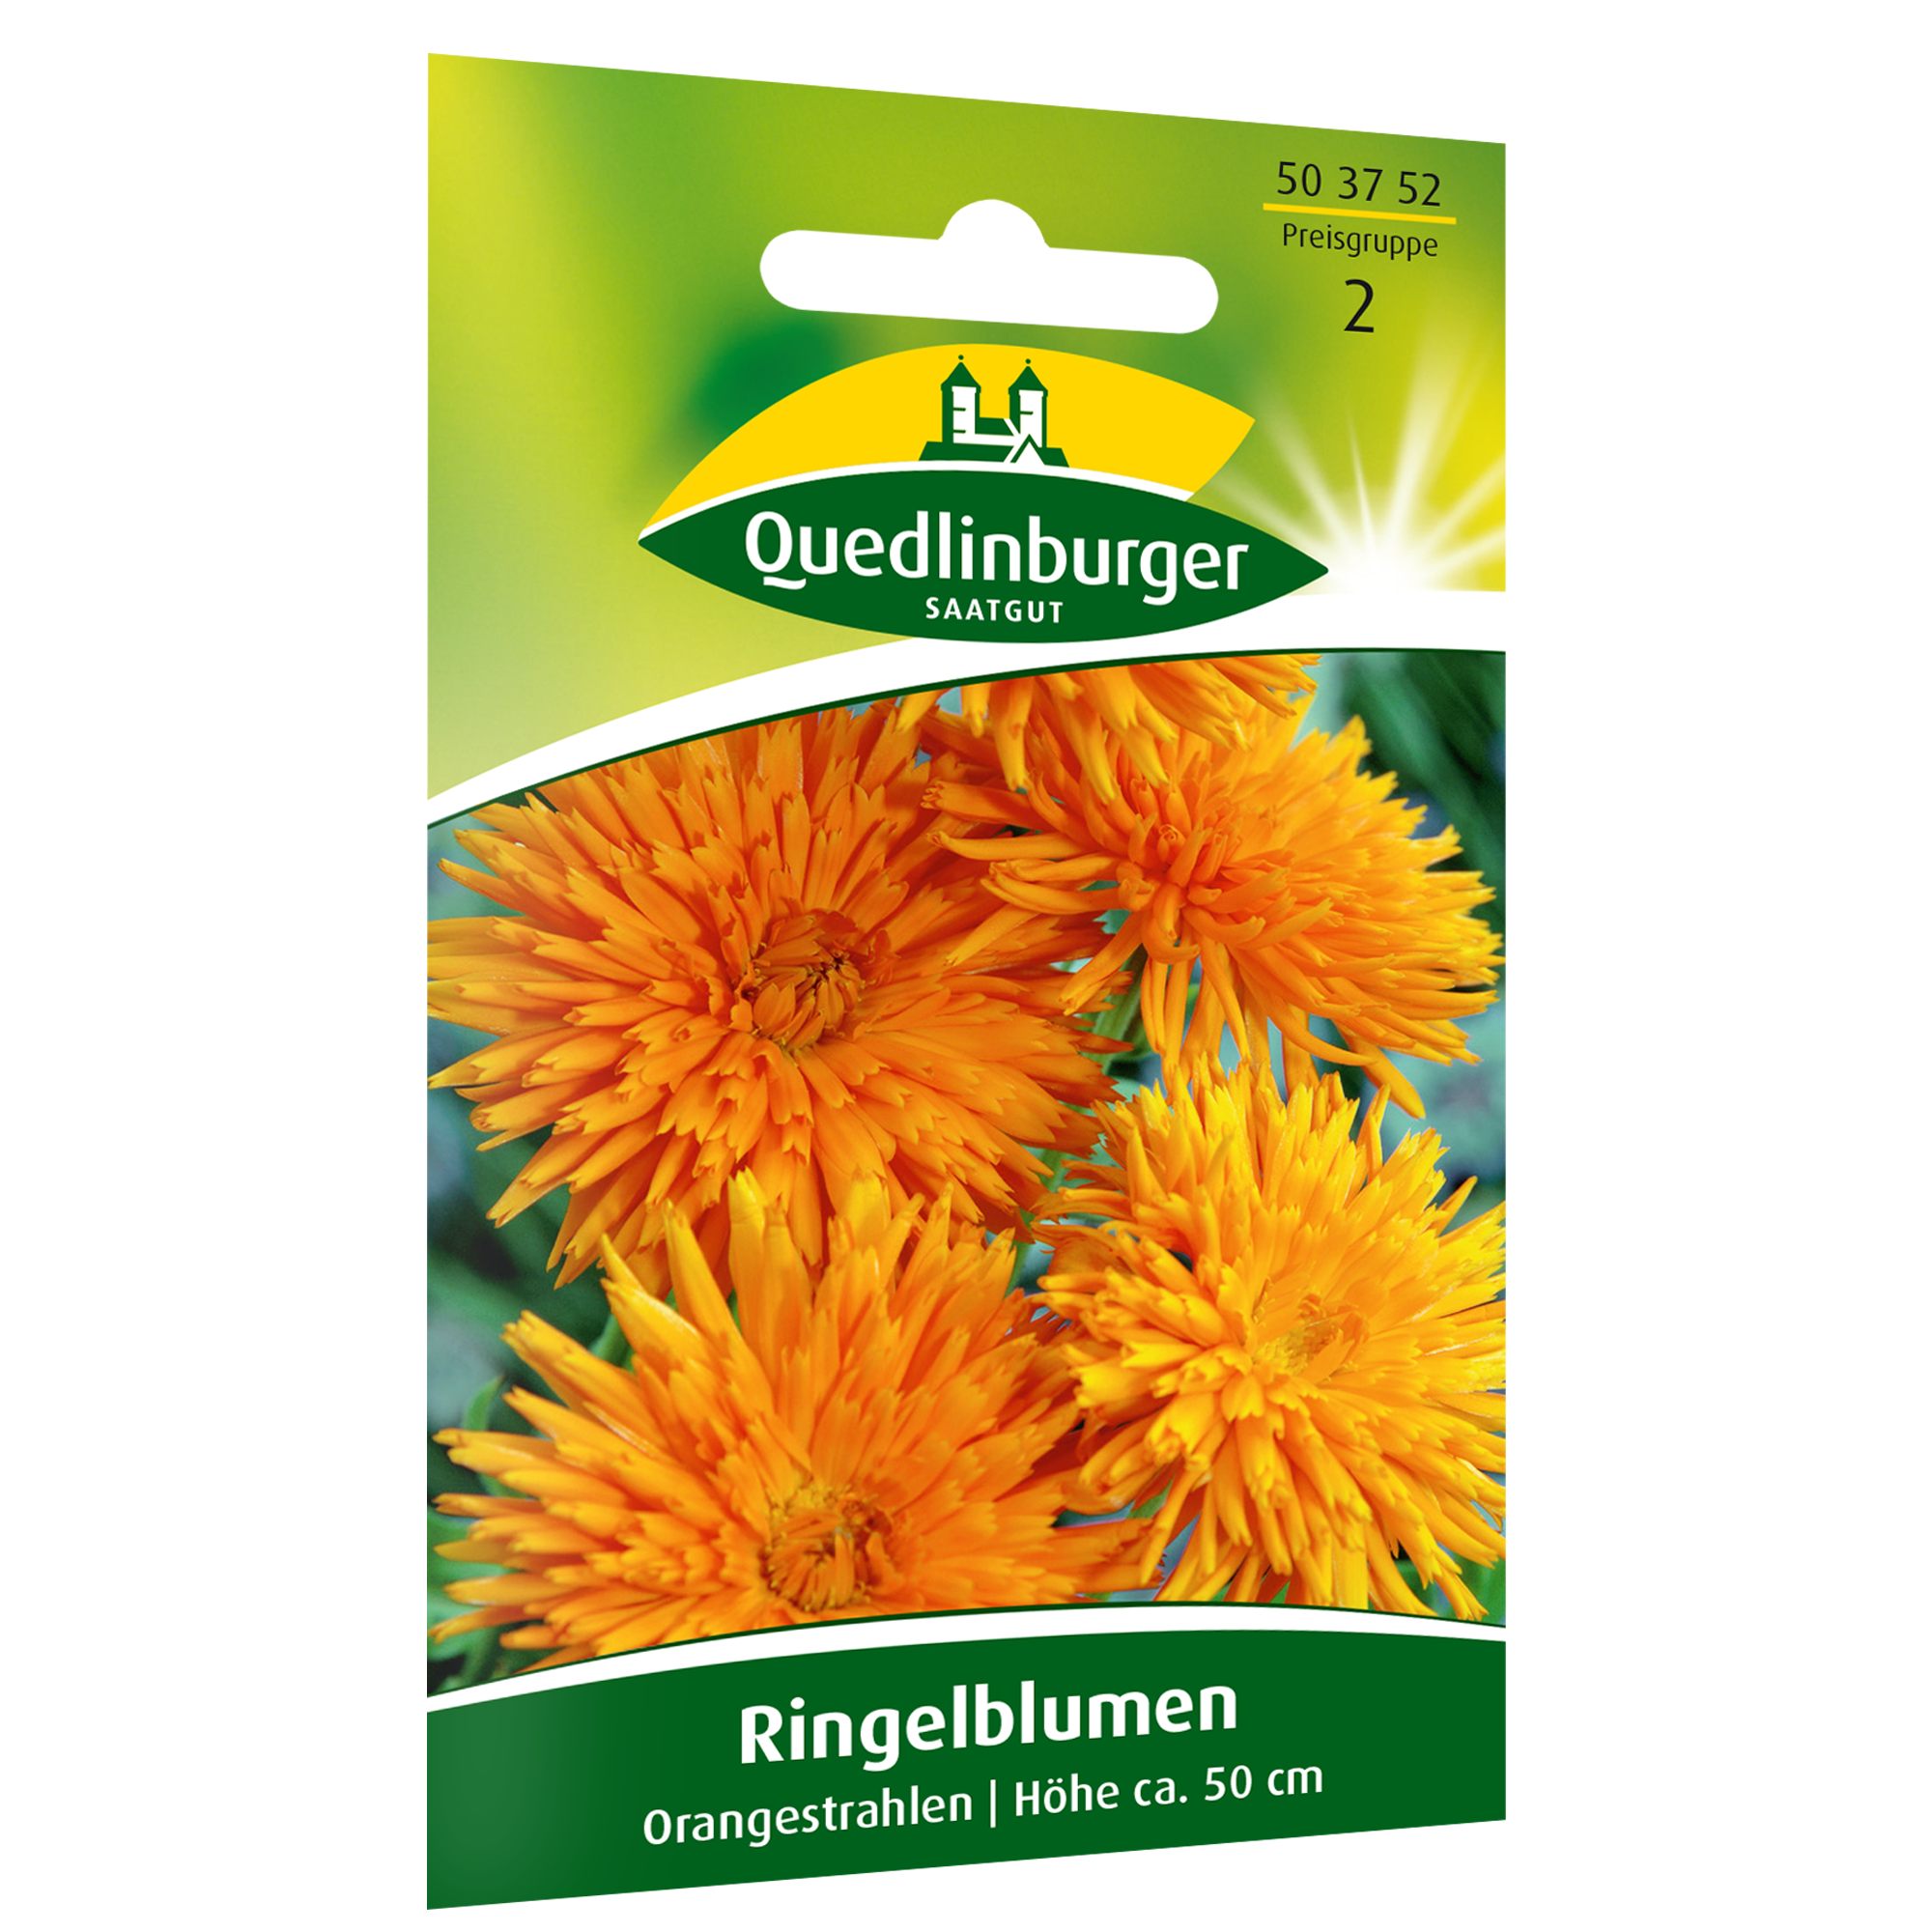 Ringelblumen 'Orangestrahlen' + product picture